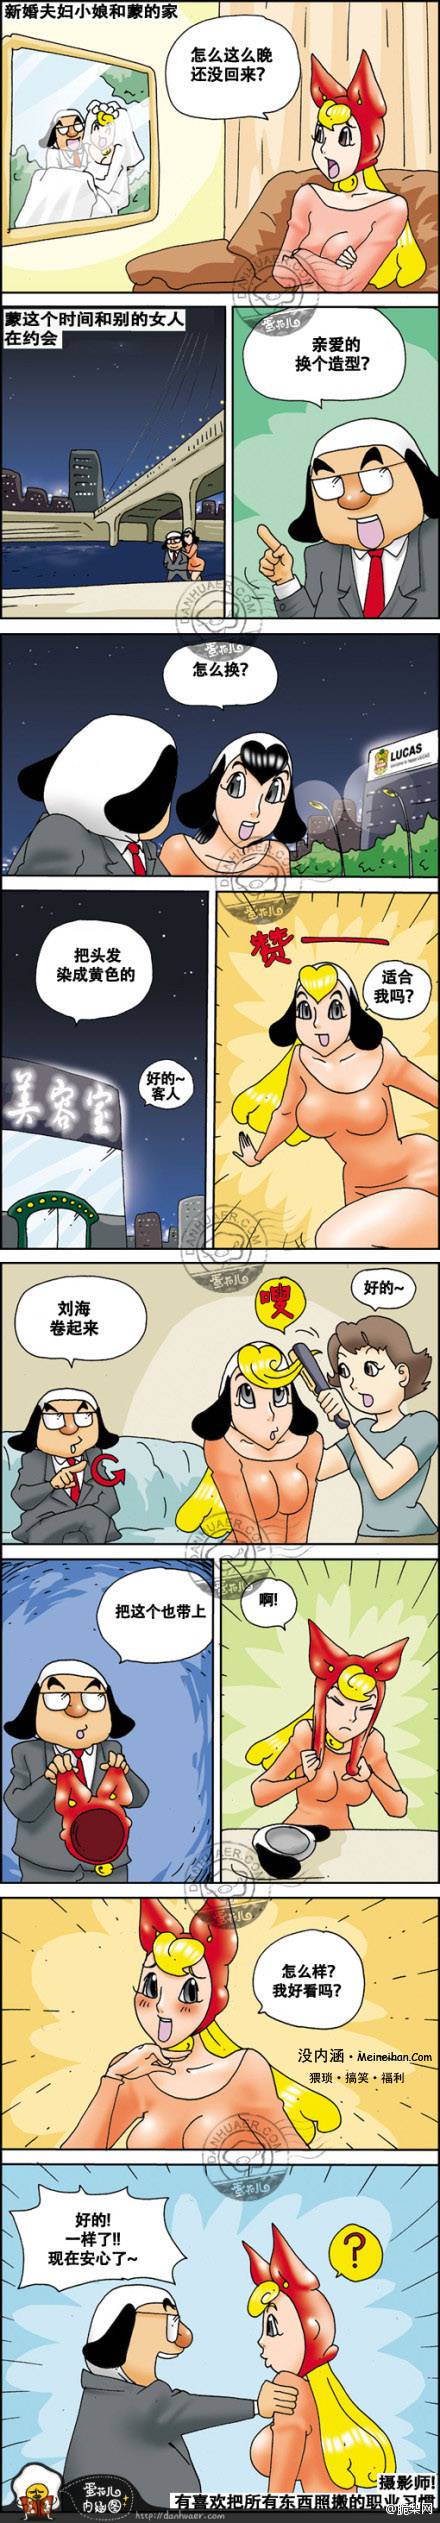 邪恶漫画爆笑囧图第102刊：女人的改变